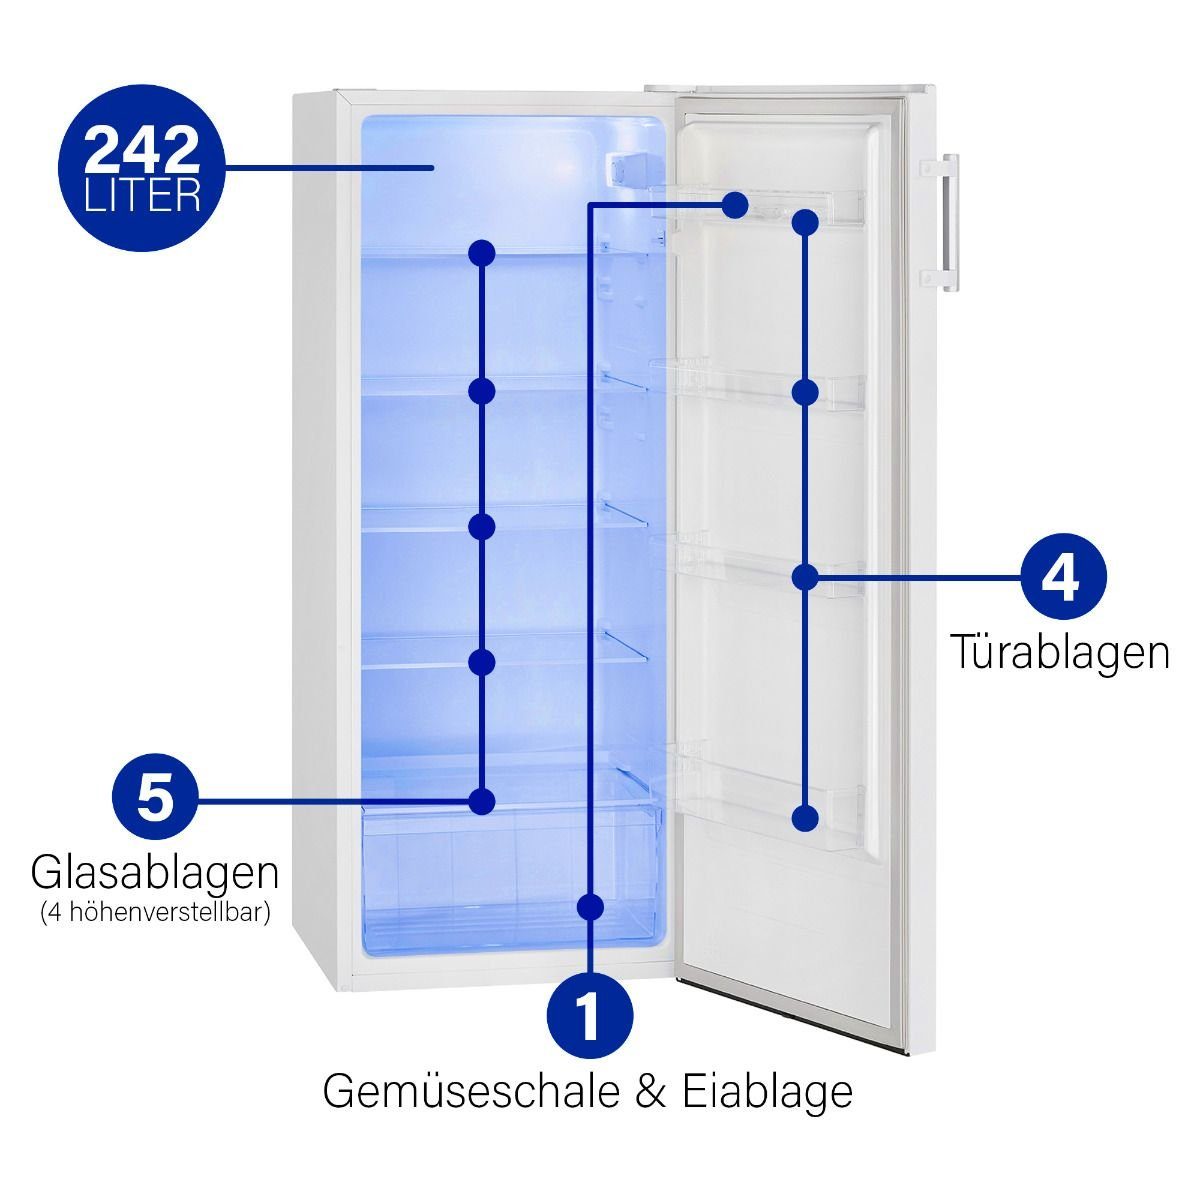 BOMANN Kühlschrank VS breit 7316, 134.4 weiß cm cm hoch, 55.0